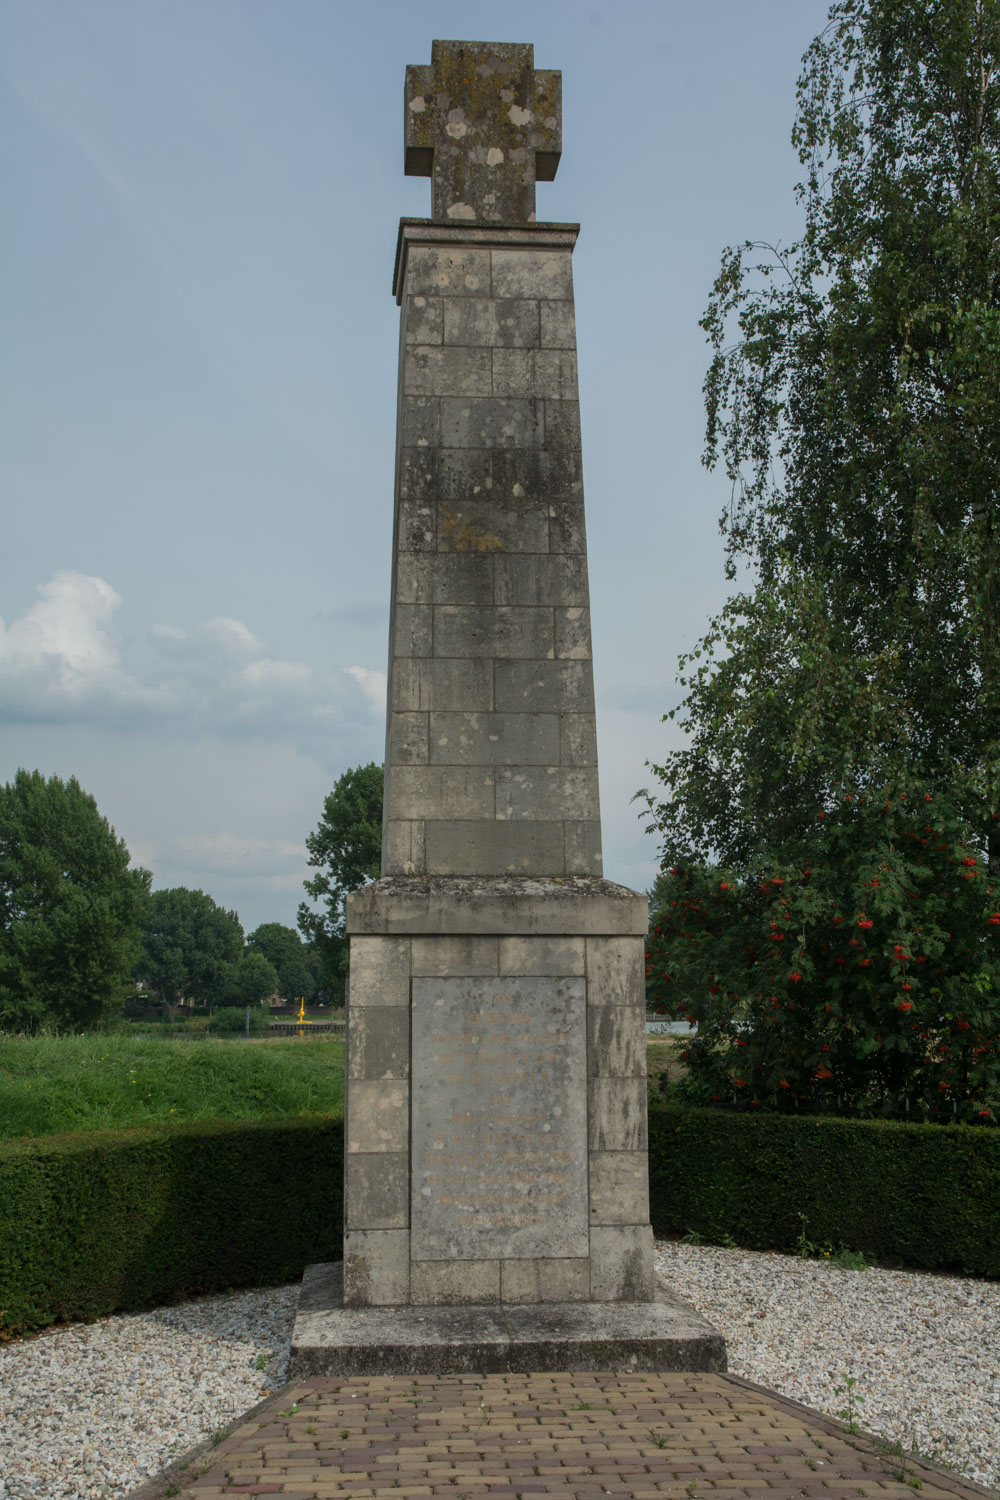 196. Monument